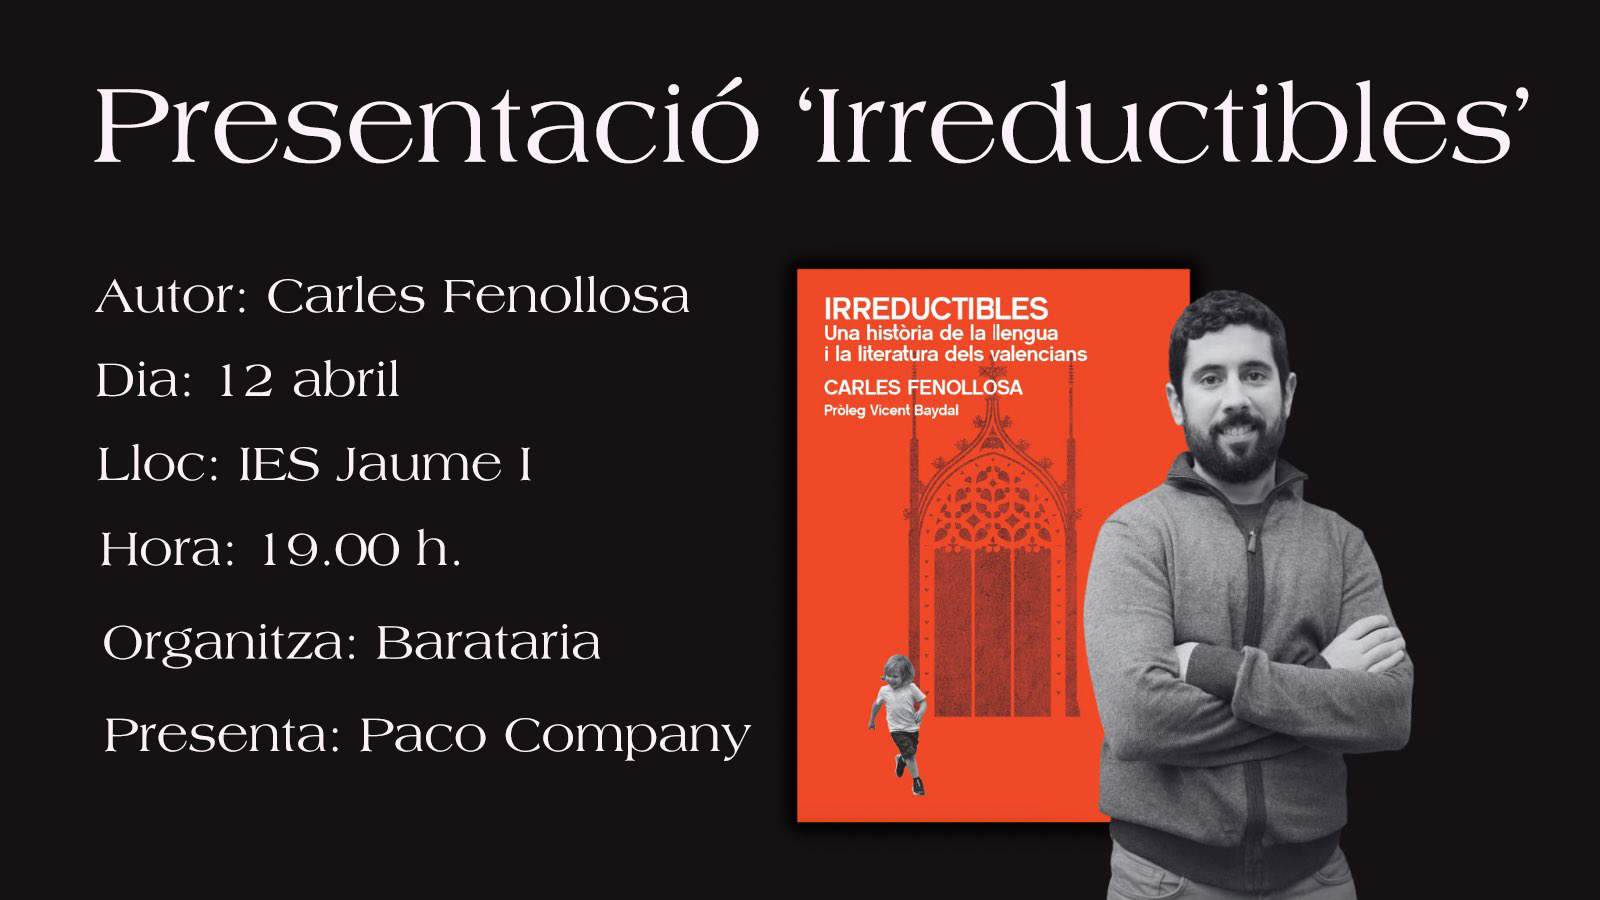 Presentación del libro "Irreductibles" de Carles Fenollosa